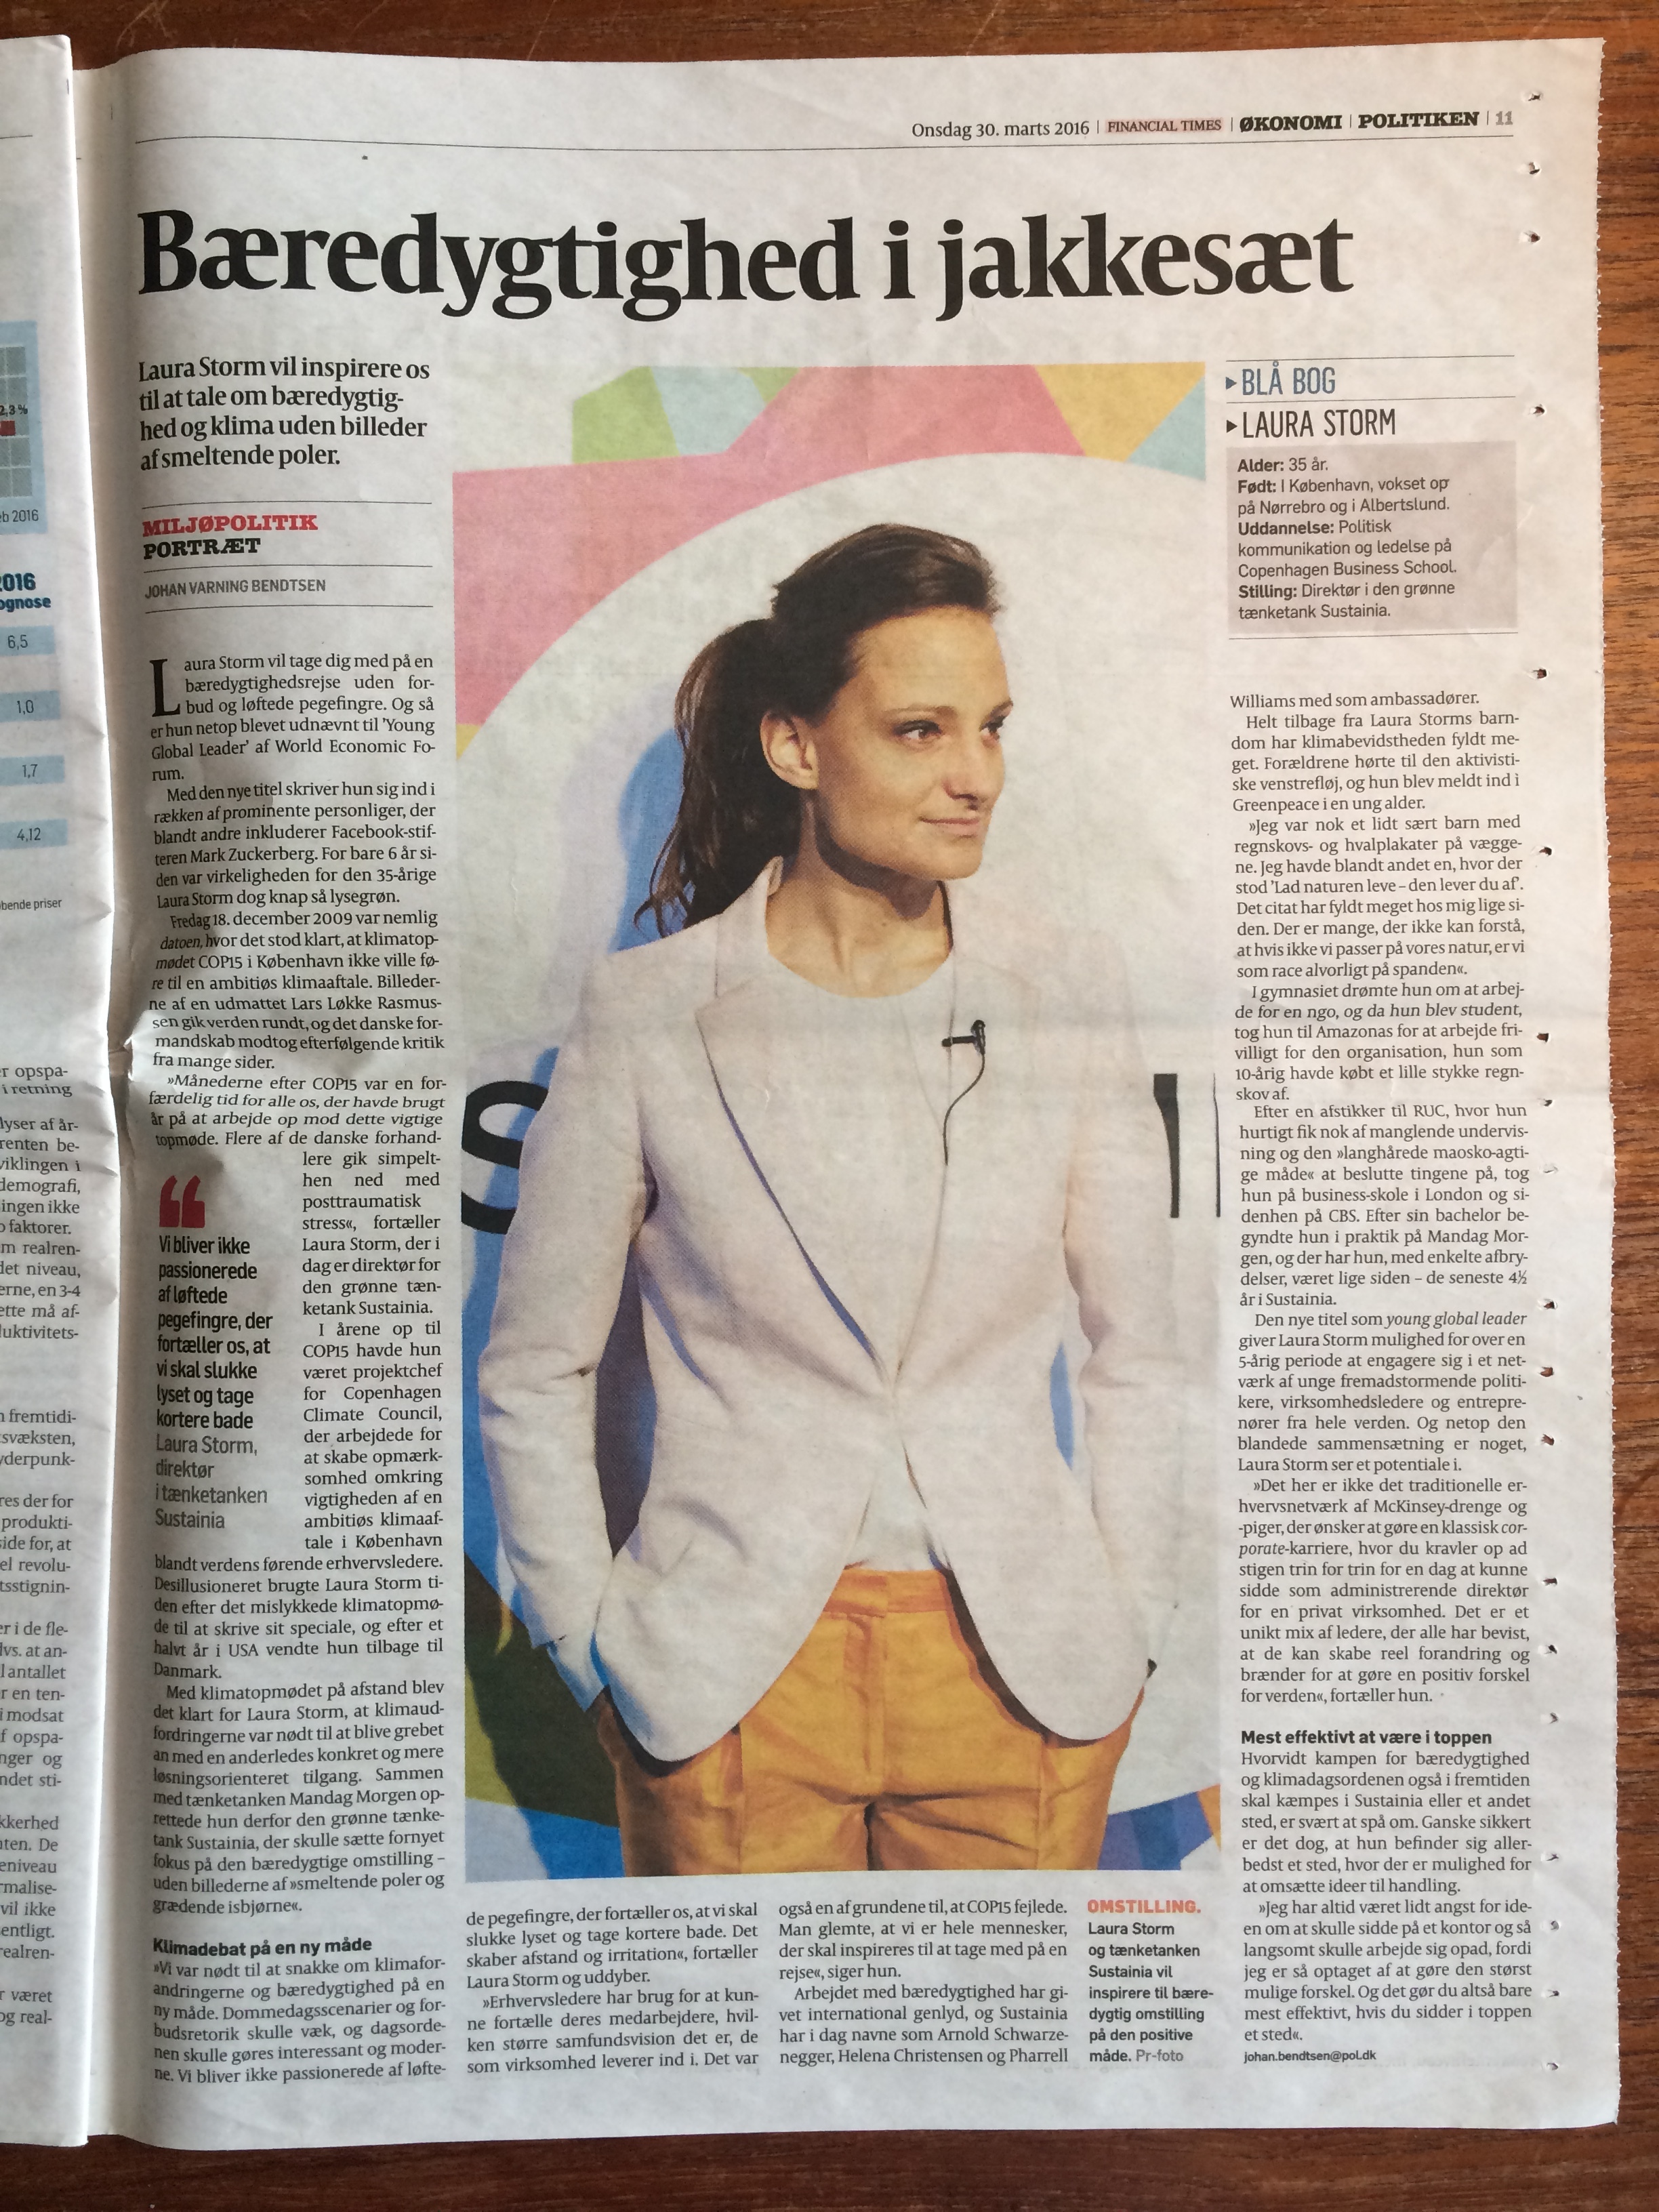 Portrait in Danish Newspaper POLITIKEN, March 30, 2016